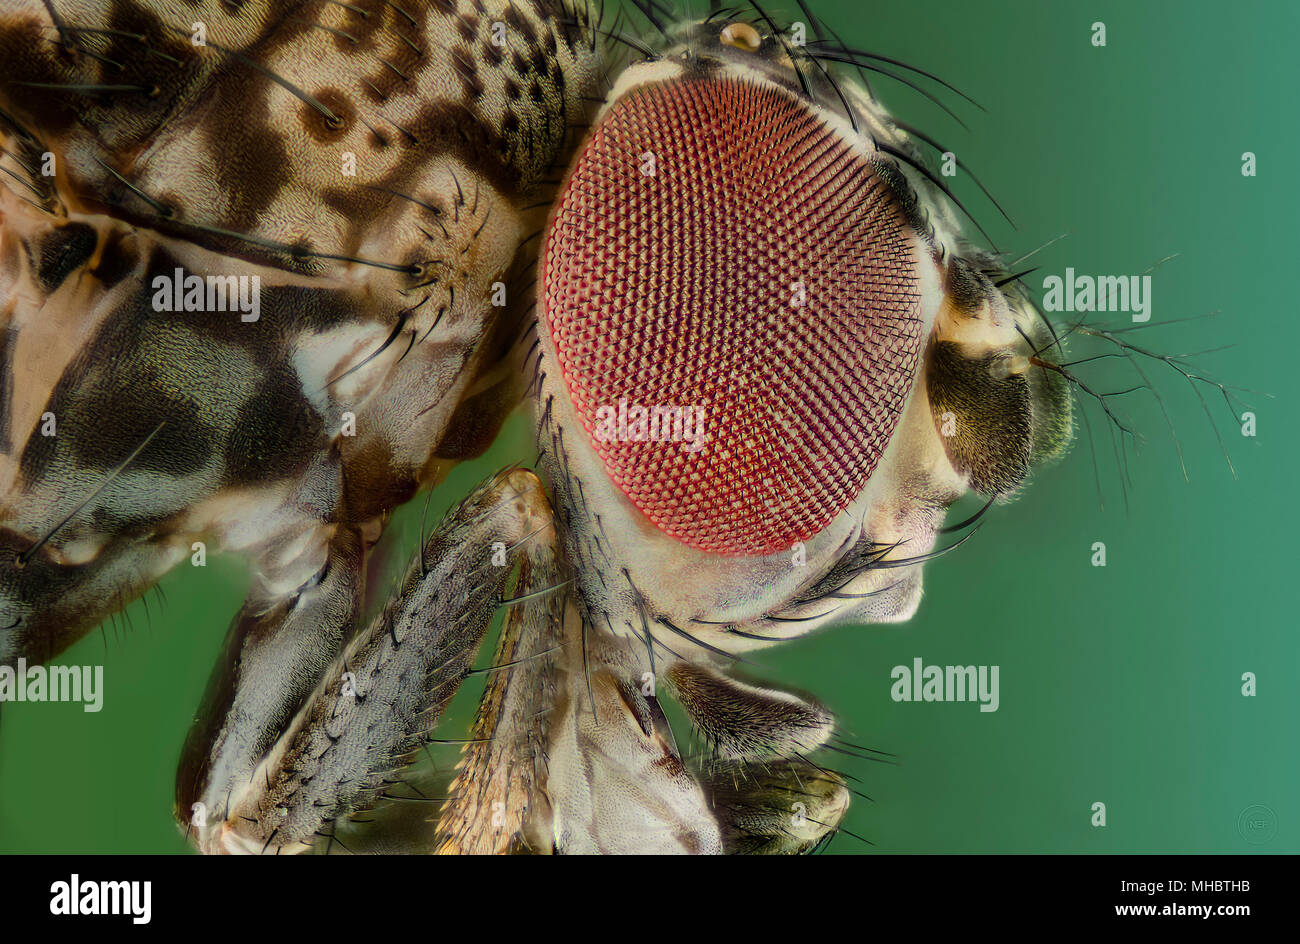 Fruit fly - drosophila melanogaster Stock Photo